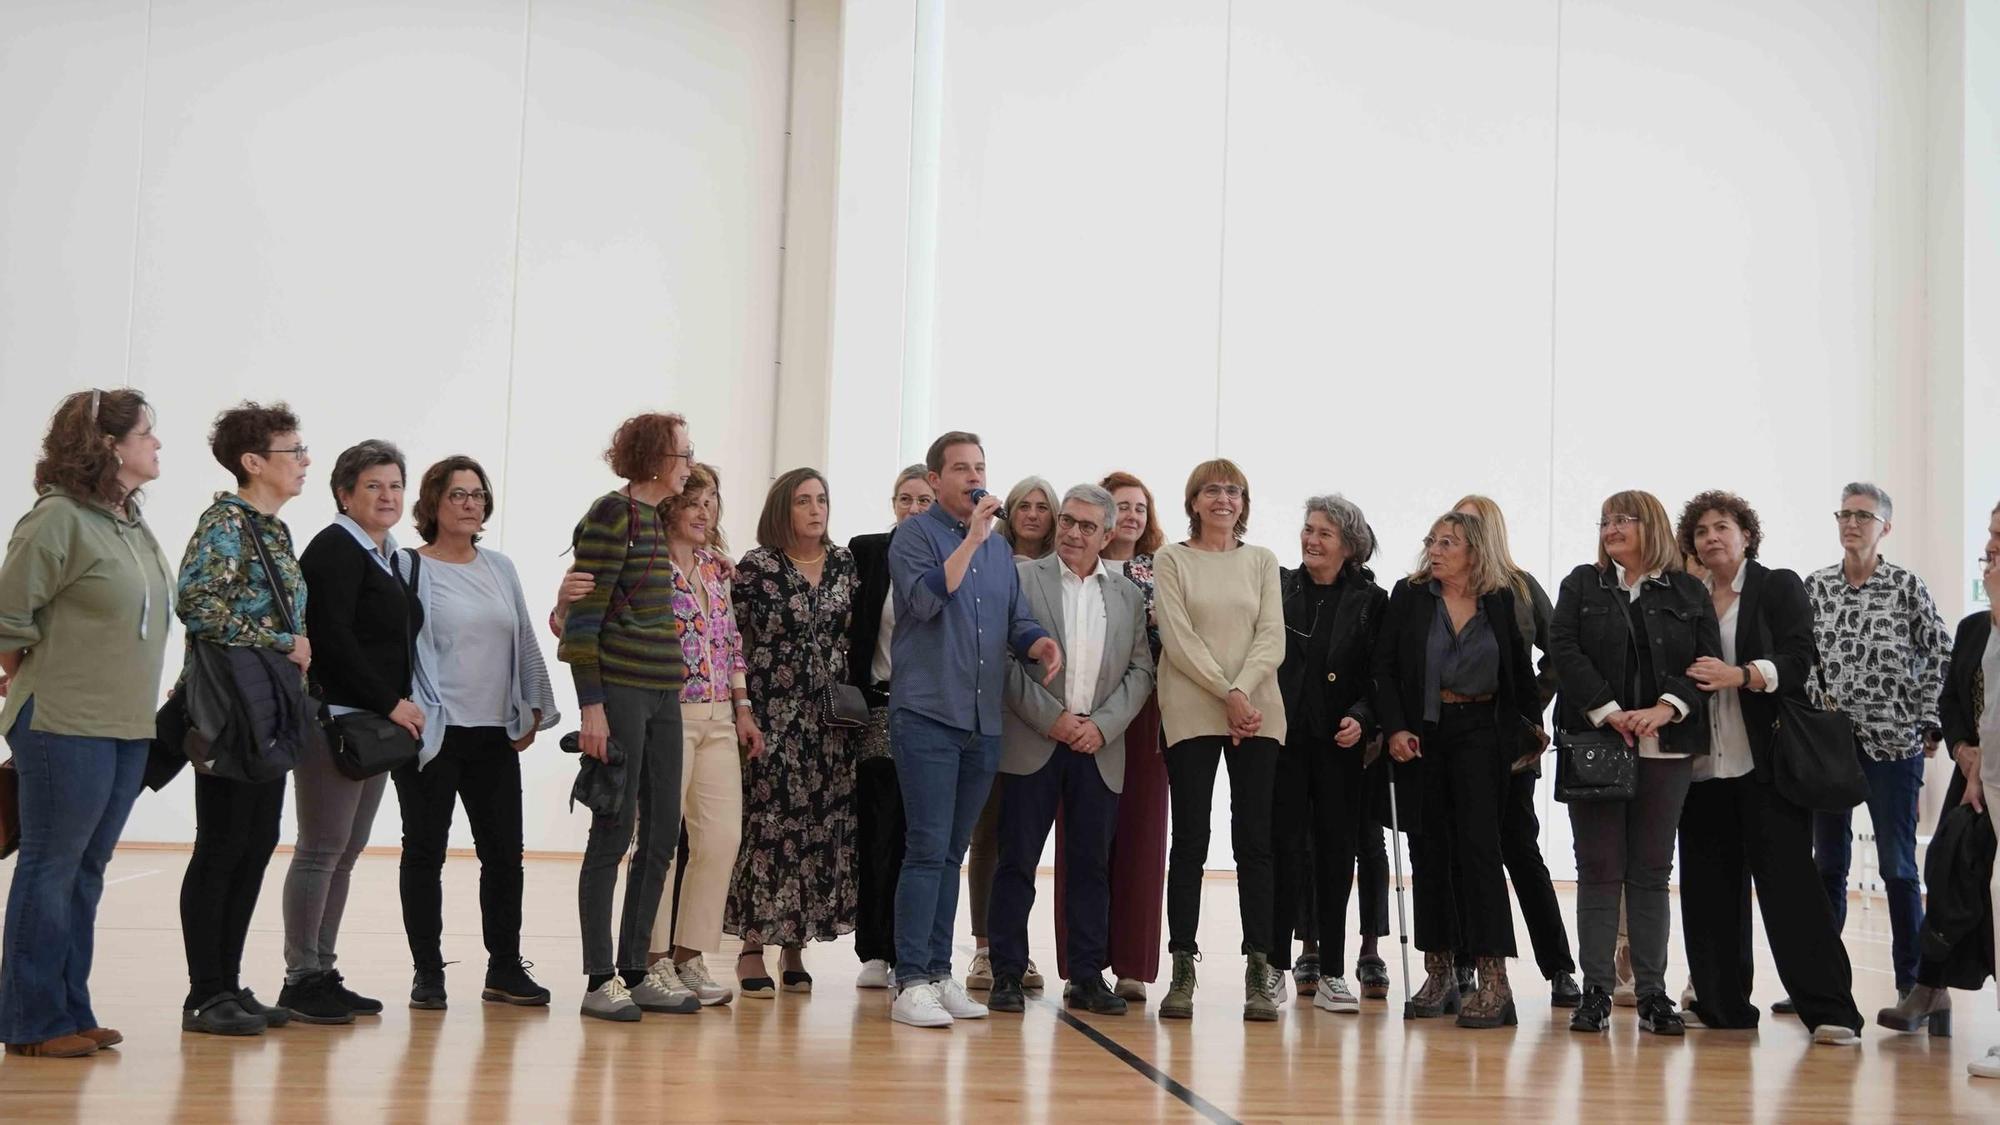 Jornada de puertas abiertas para conocer el nuevo pabellón "Pilar Larriba" de Xàtiva